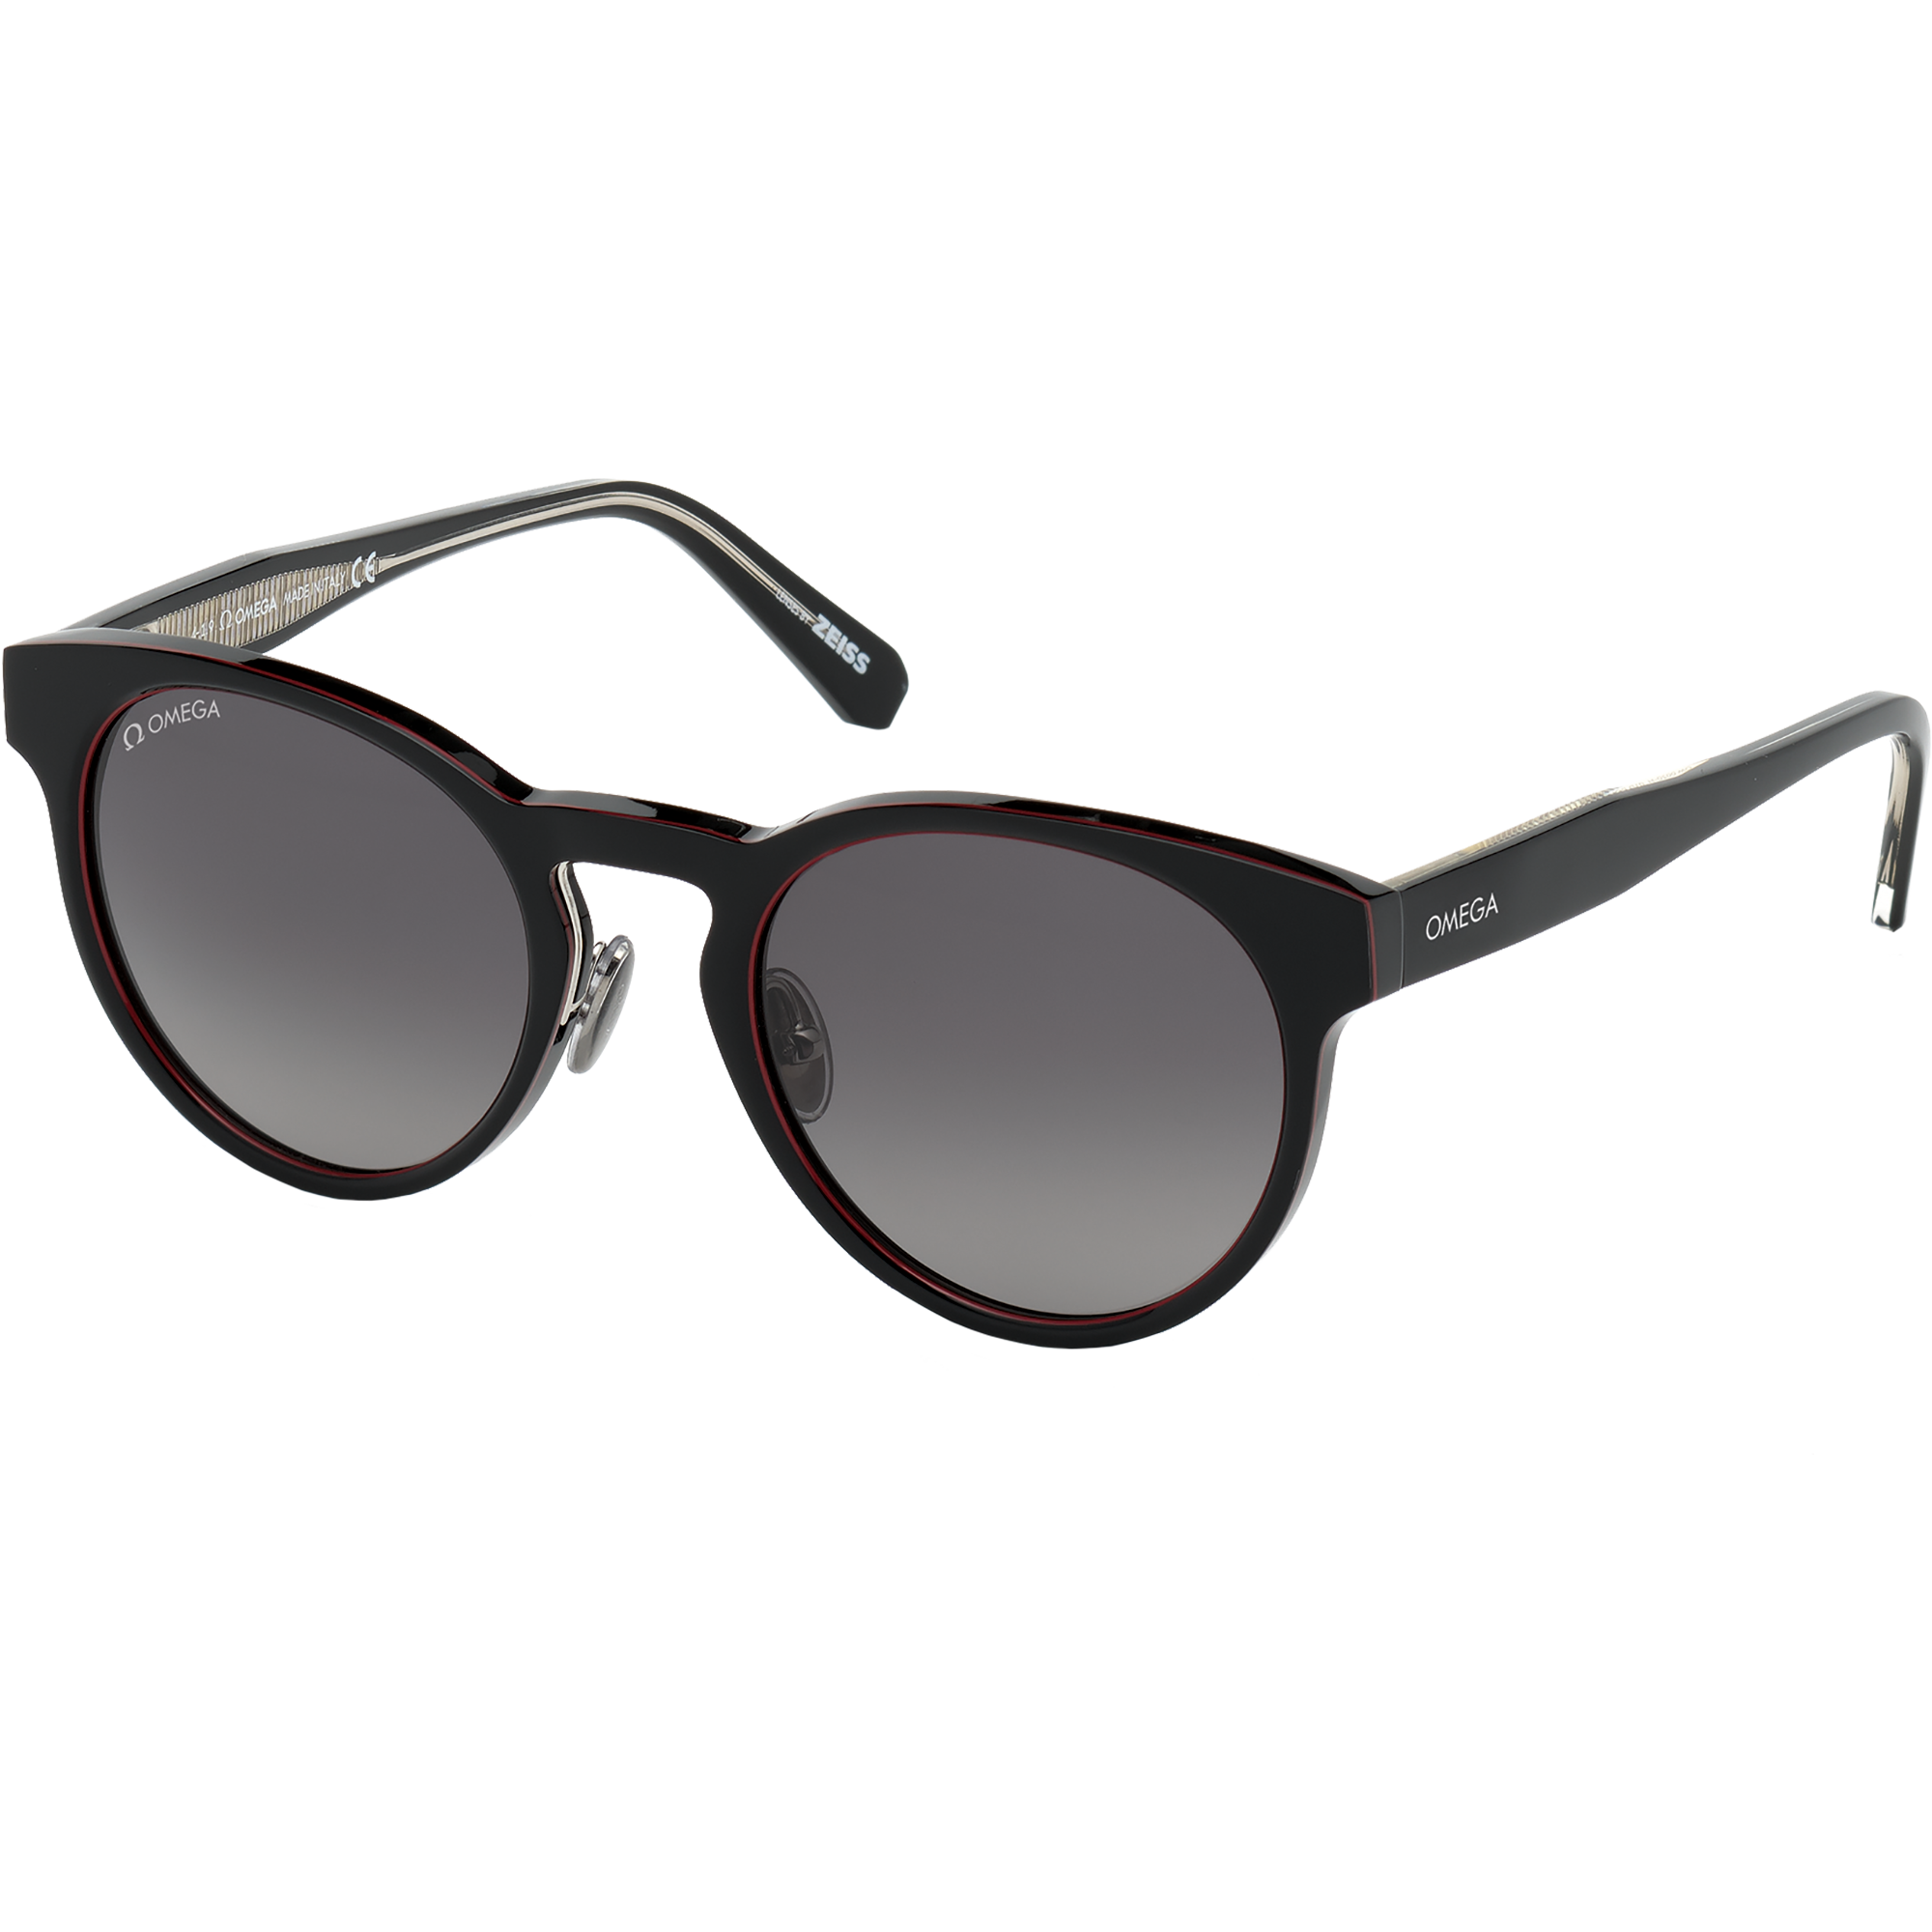 Солнцезащитные очки - Круглая форма, ОЧКИ ДЛЯ МУЖЧИН И ЖЕНЩИН - OM0020-H5201D